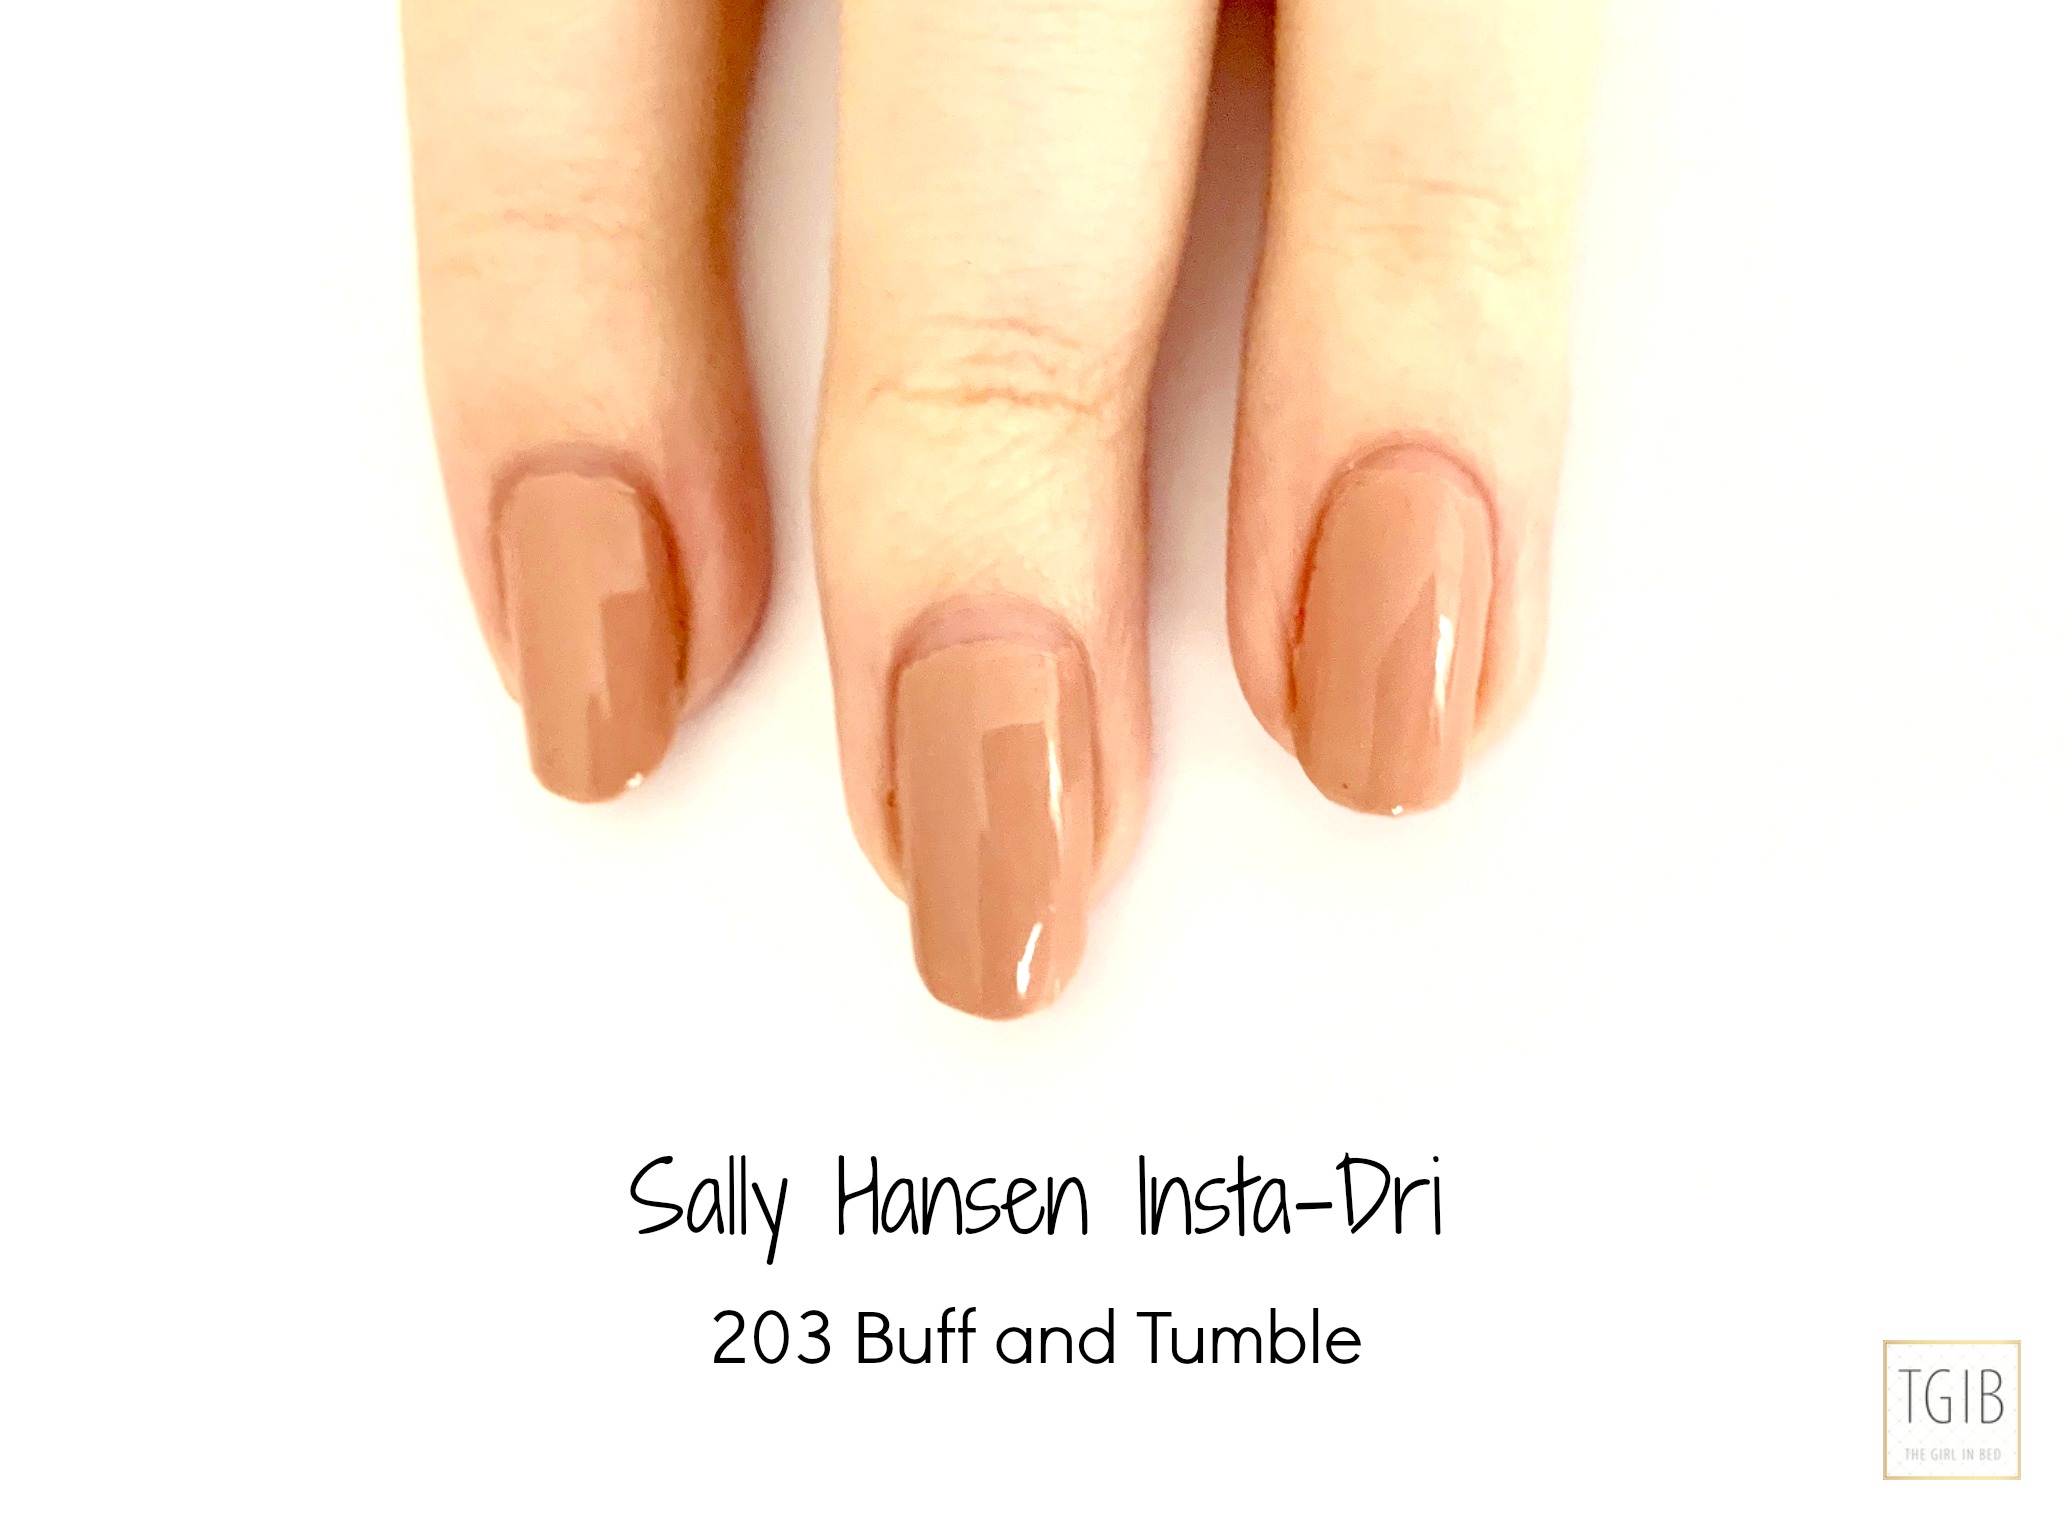 Sally Hansen Insta-Dri Nail Color in Buff 203 - wide 9